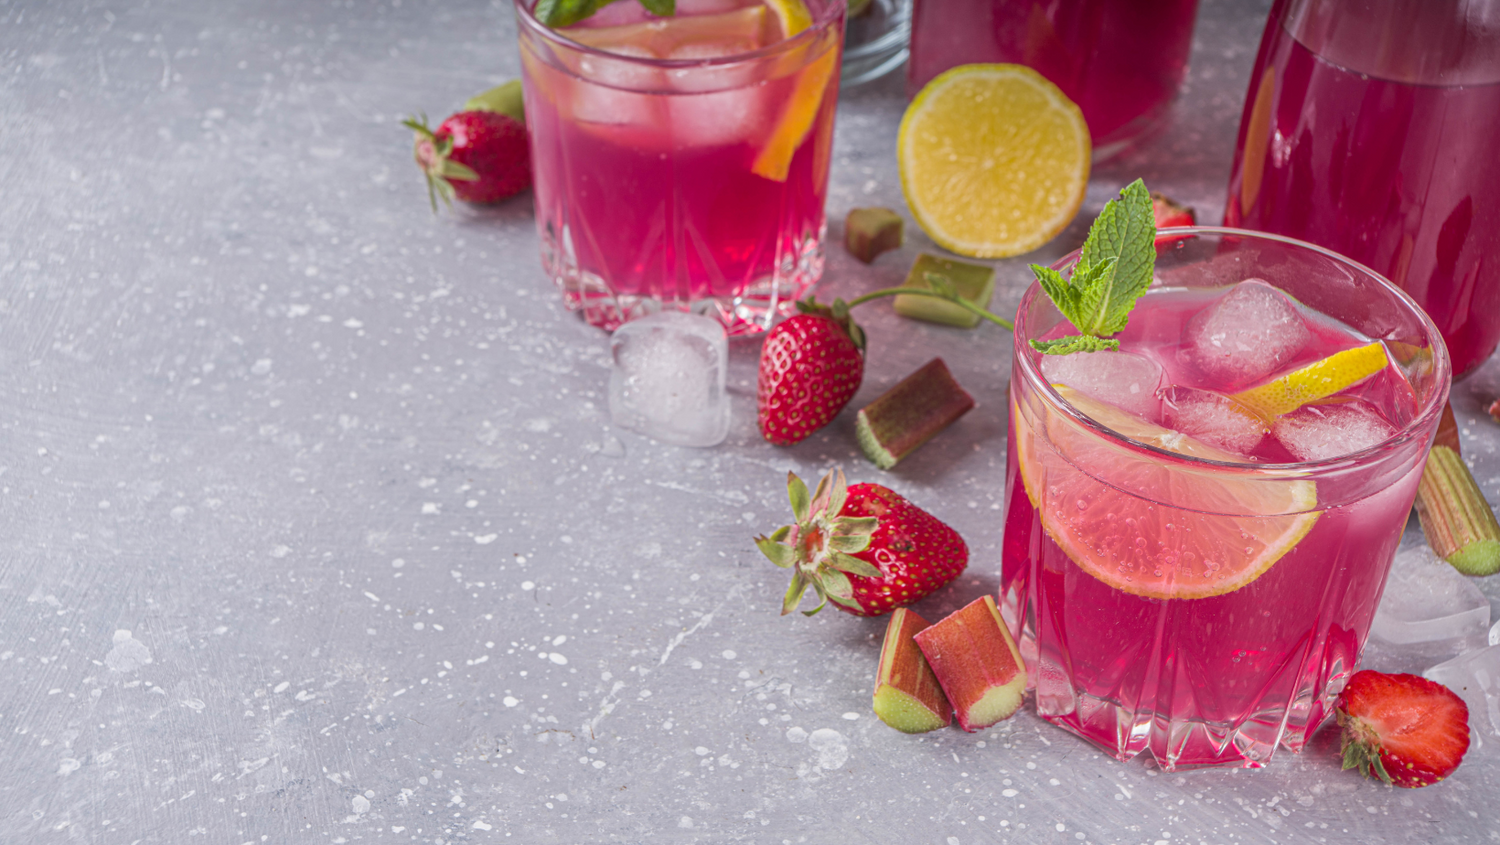 Strawberry Rhubarb Lemonade